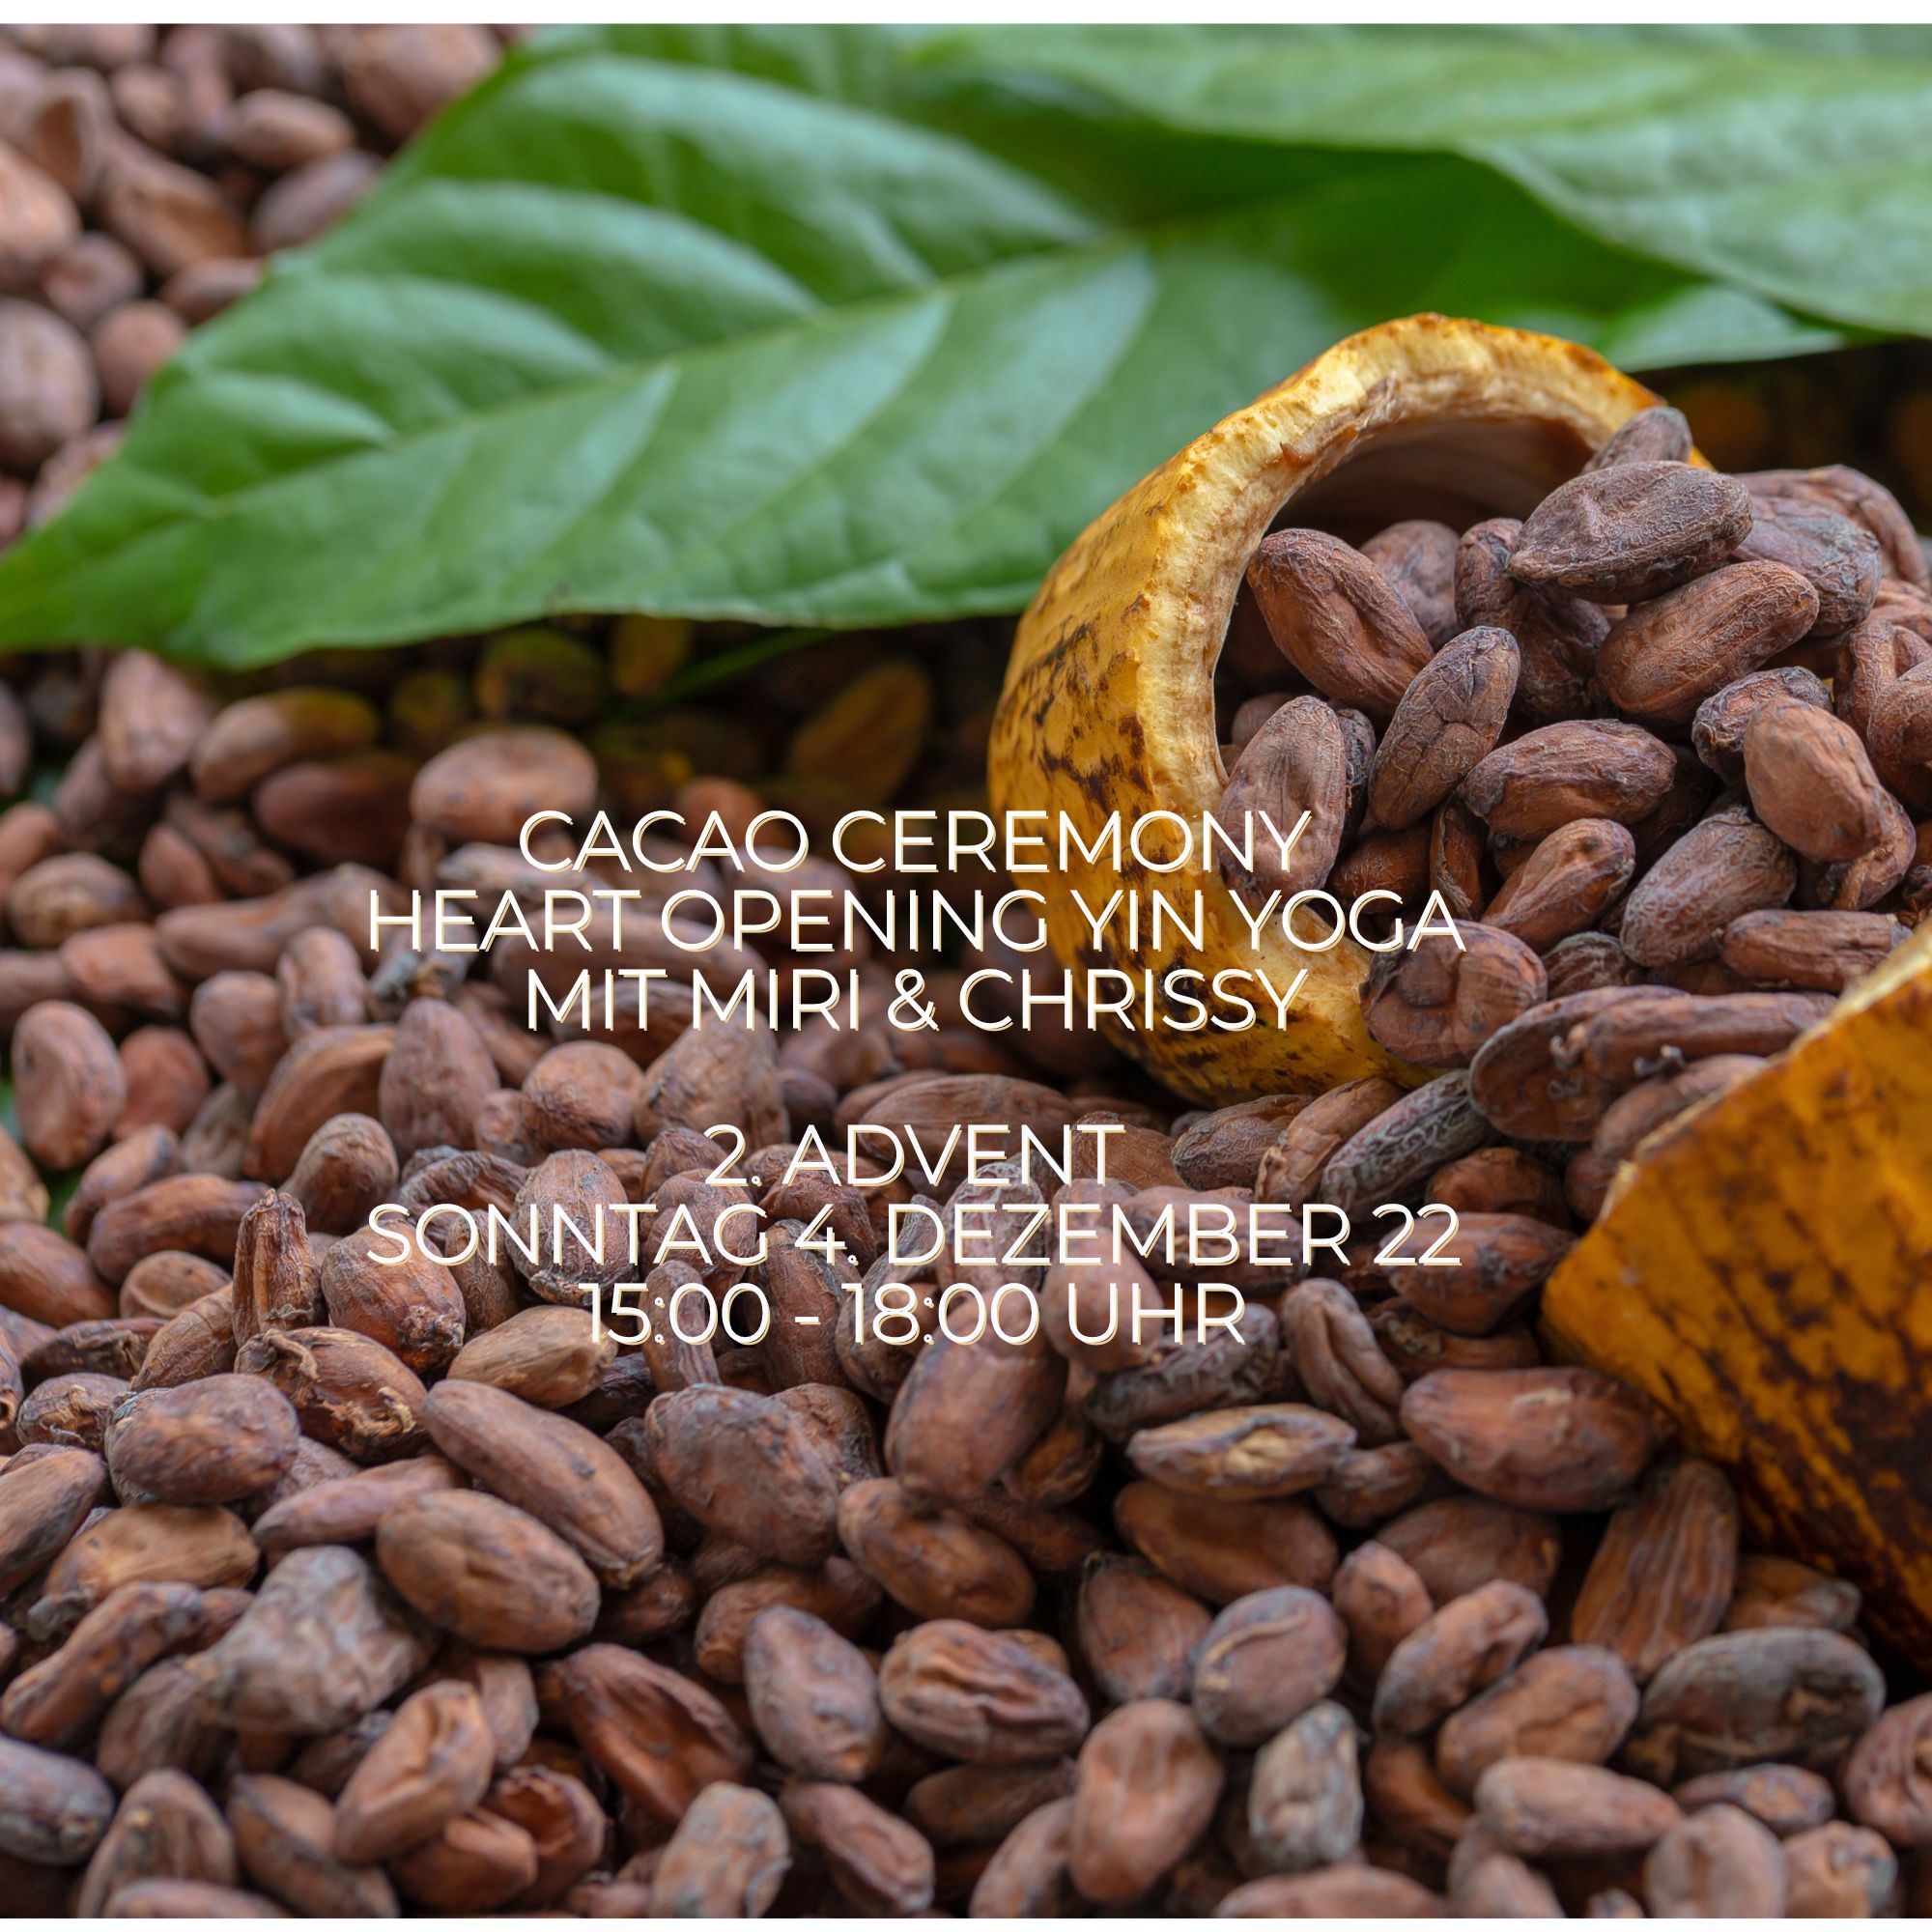 Sonntag der 4.Dezember 22 um 15 Uhr: Safe & Sound Cacao Ceremony mit Miri und Chrissy